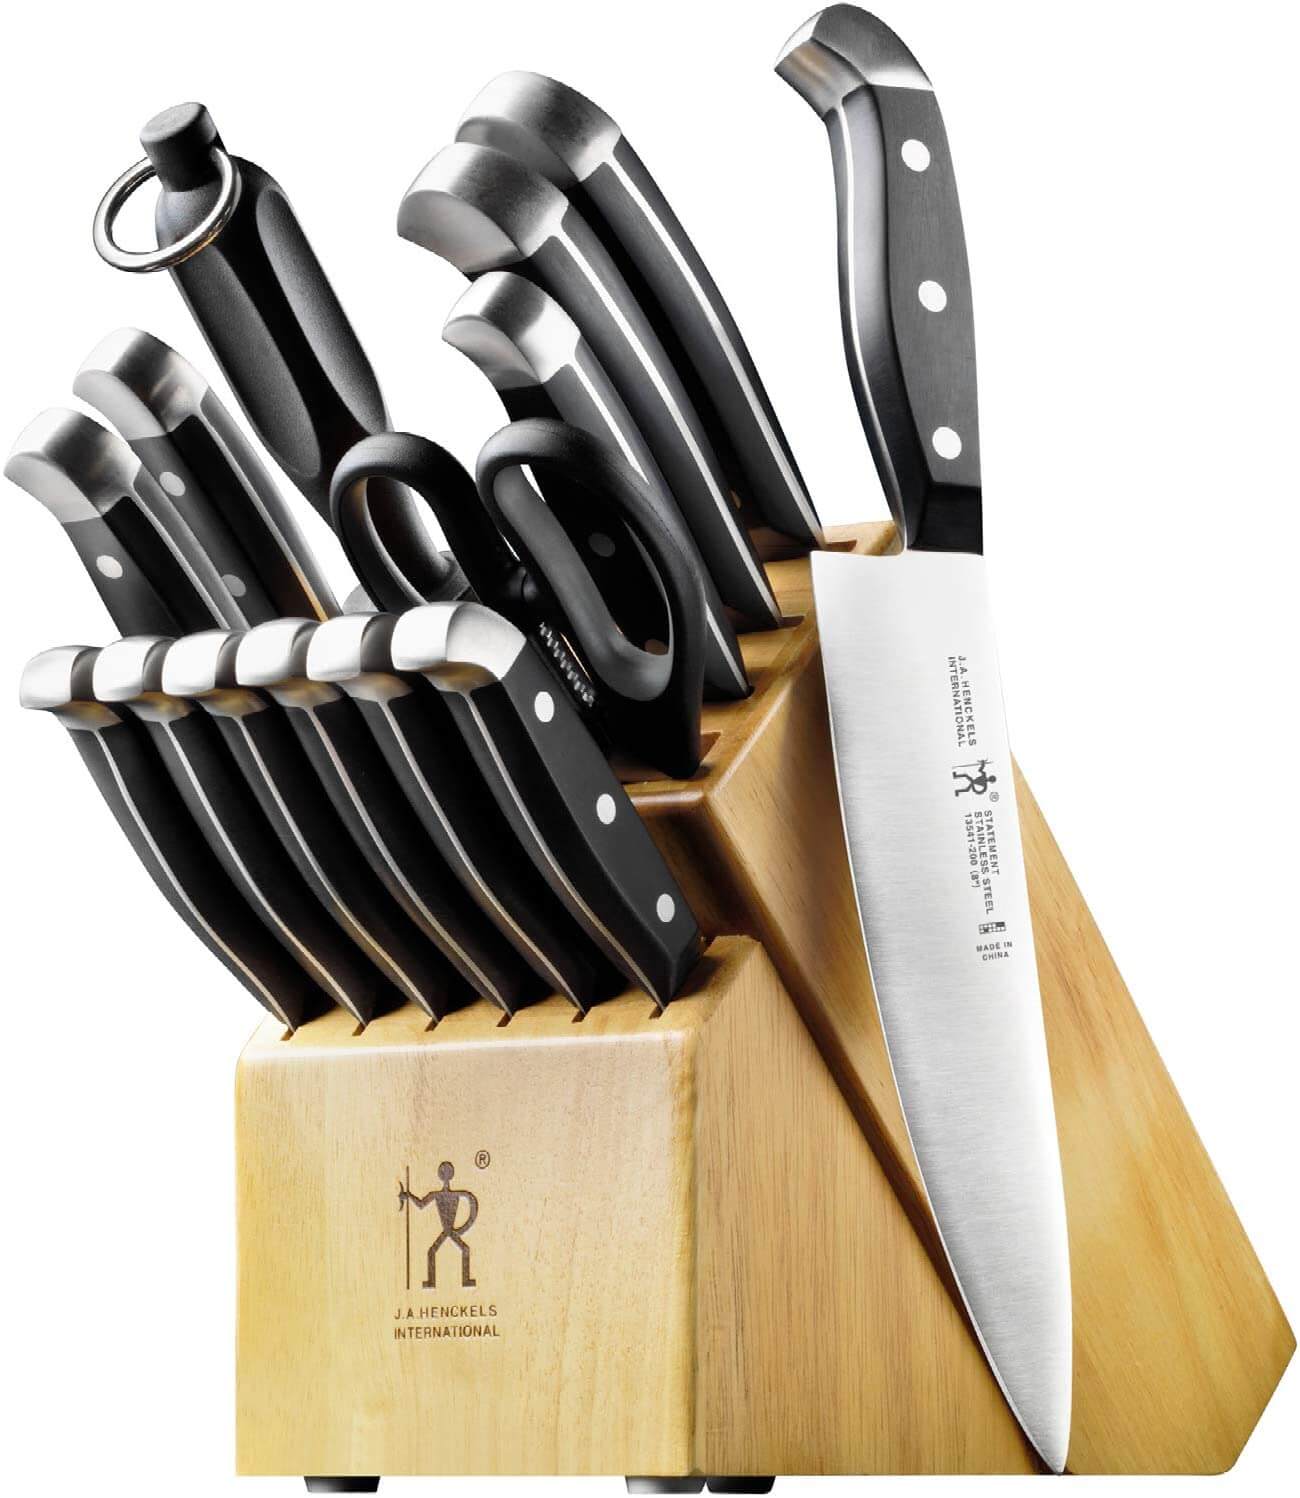 J.A. Henckels International Statement Kitchen Knife Set with Block